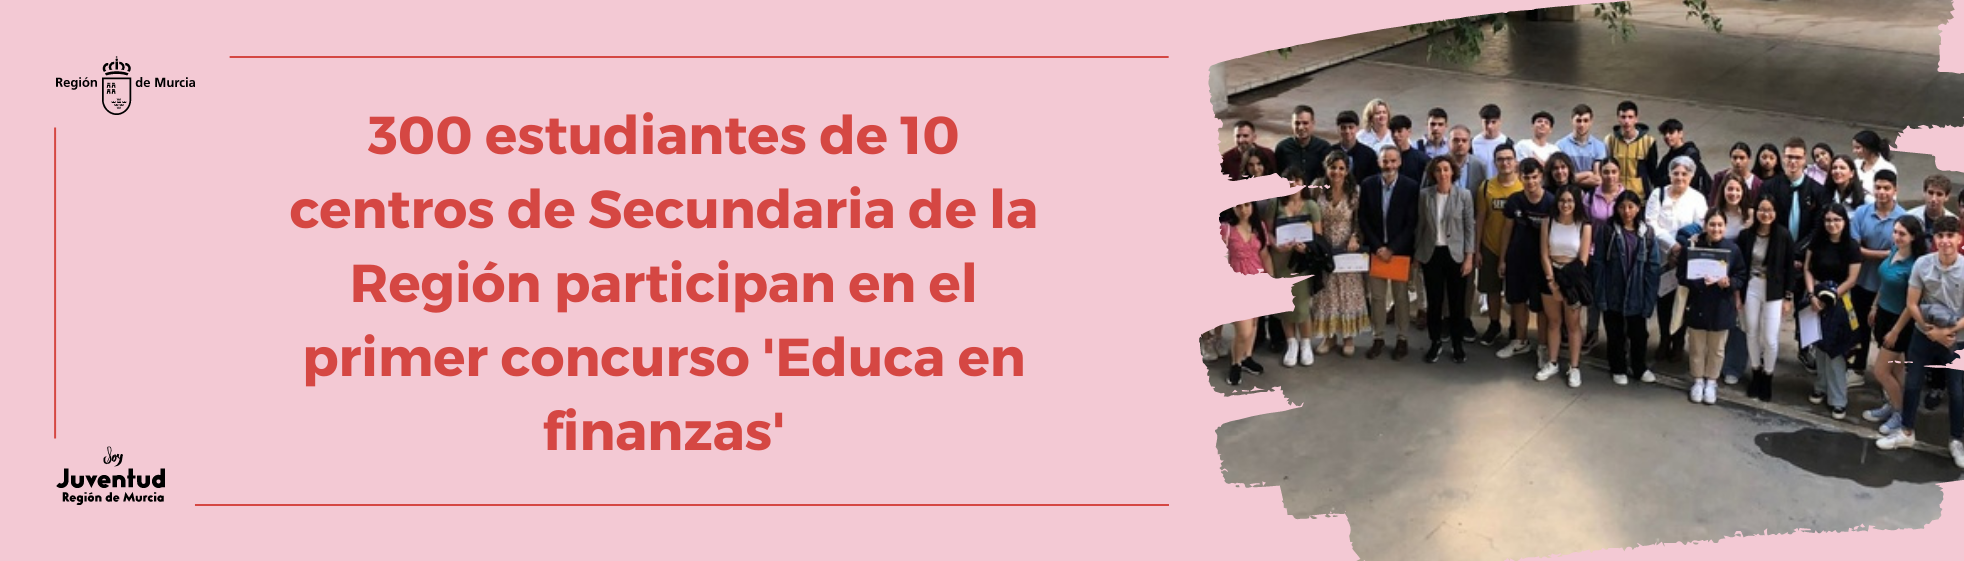 300 estudiantes de 10 centros de Secundaria de la Región participan en el primer concurso 'Educa en finanzas'